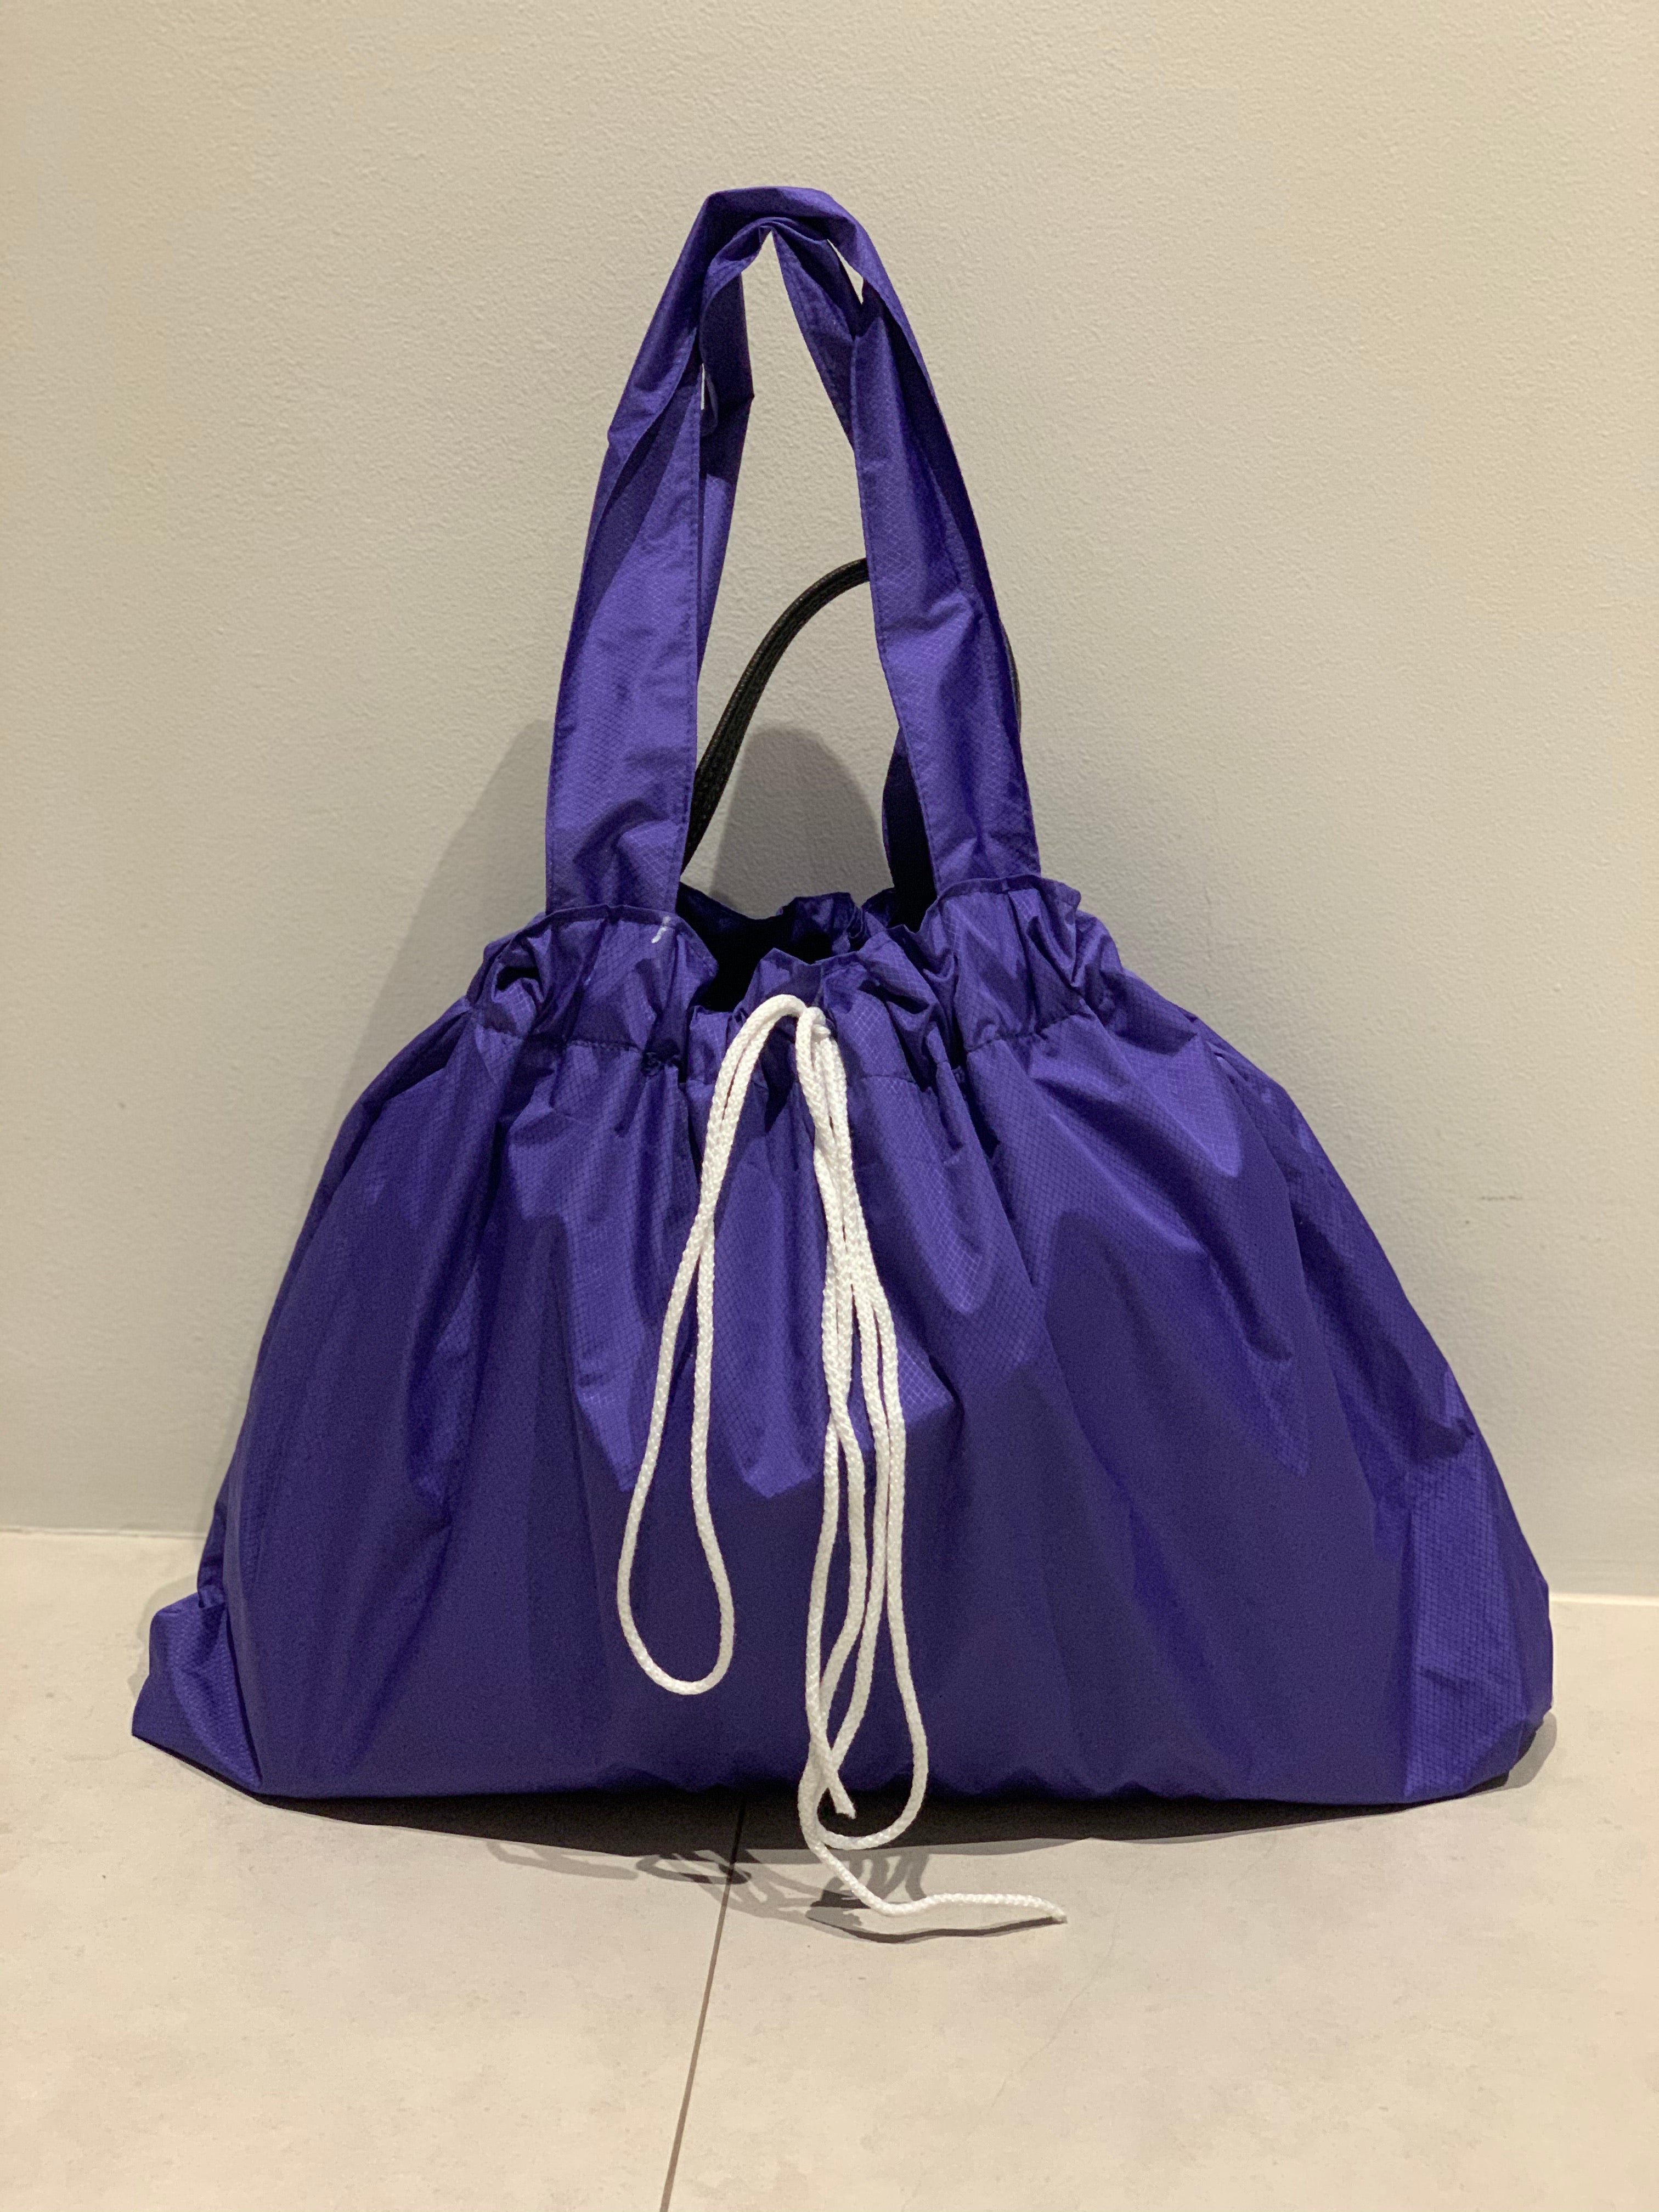 Waterproof bag protector